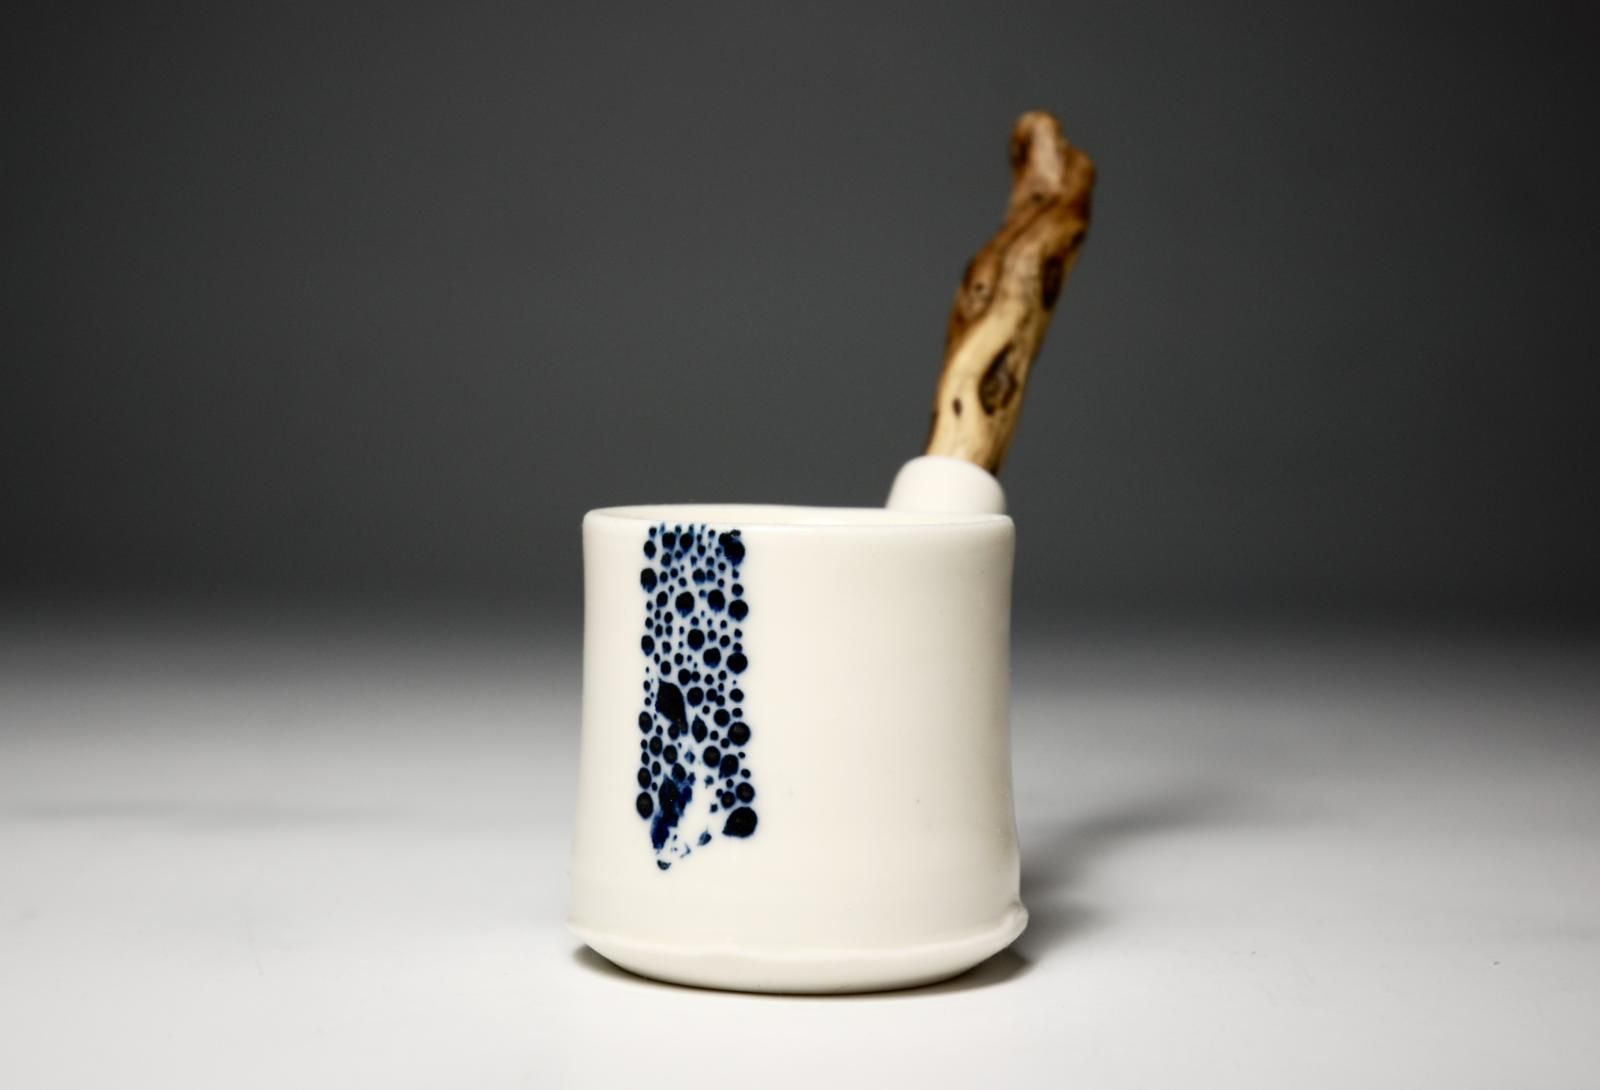 Drift wood handled salt pot by Richard Heeley